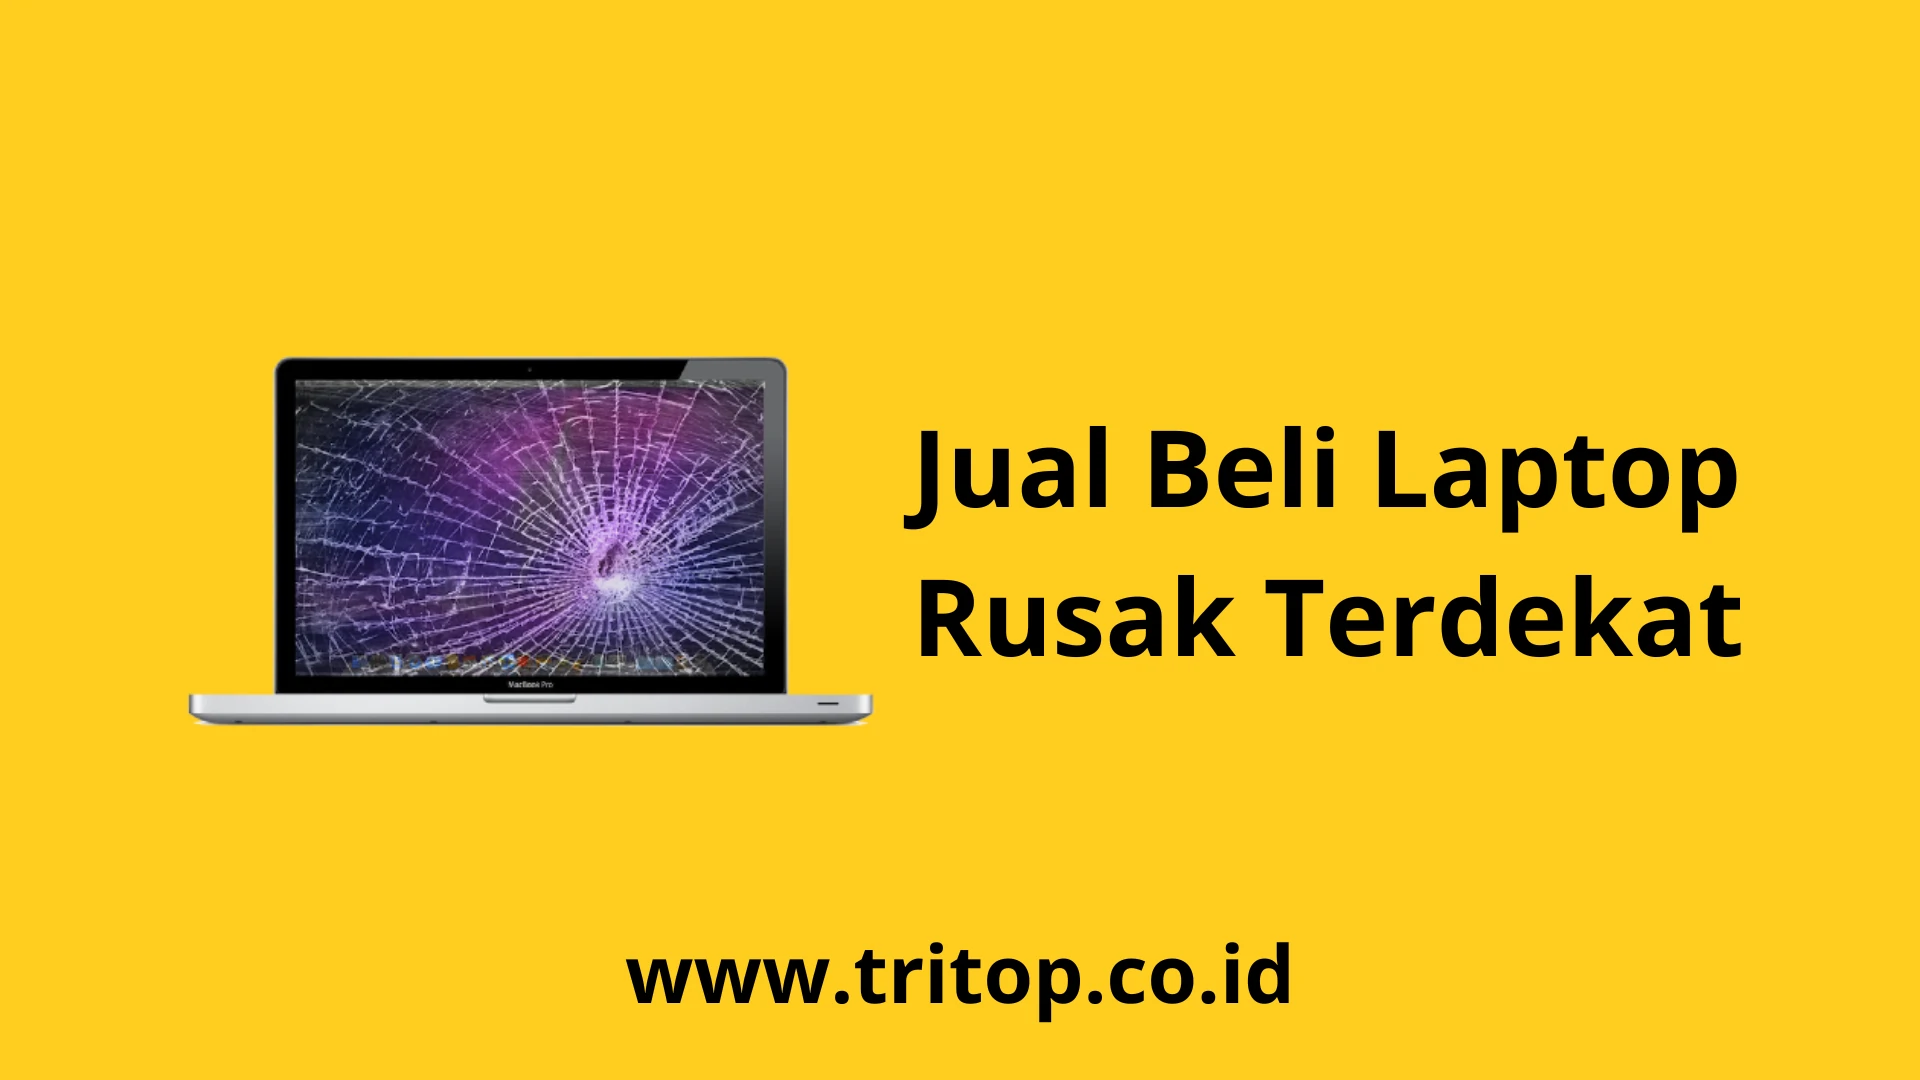 Jual Beli Laptop Rusak Terdekat Tritop.co.id